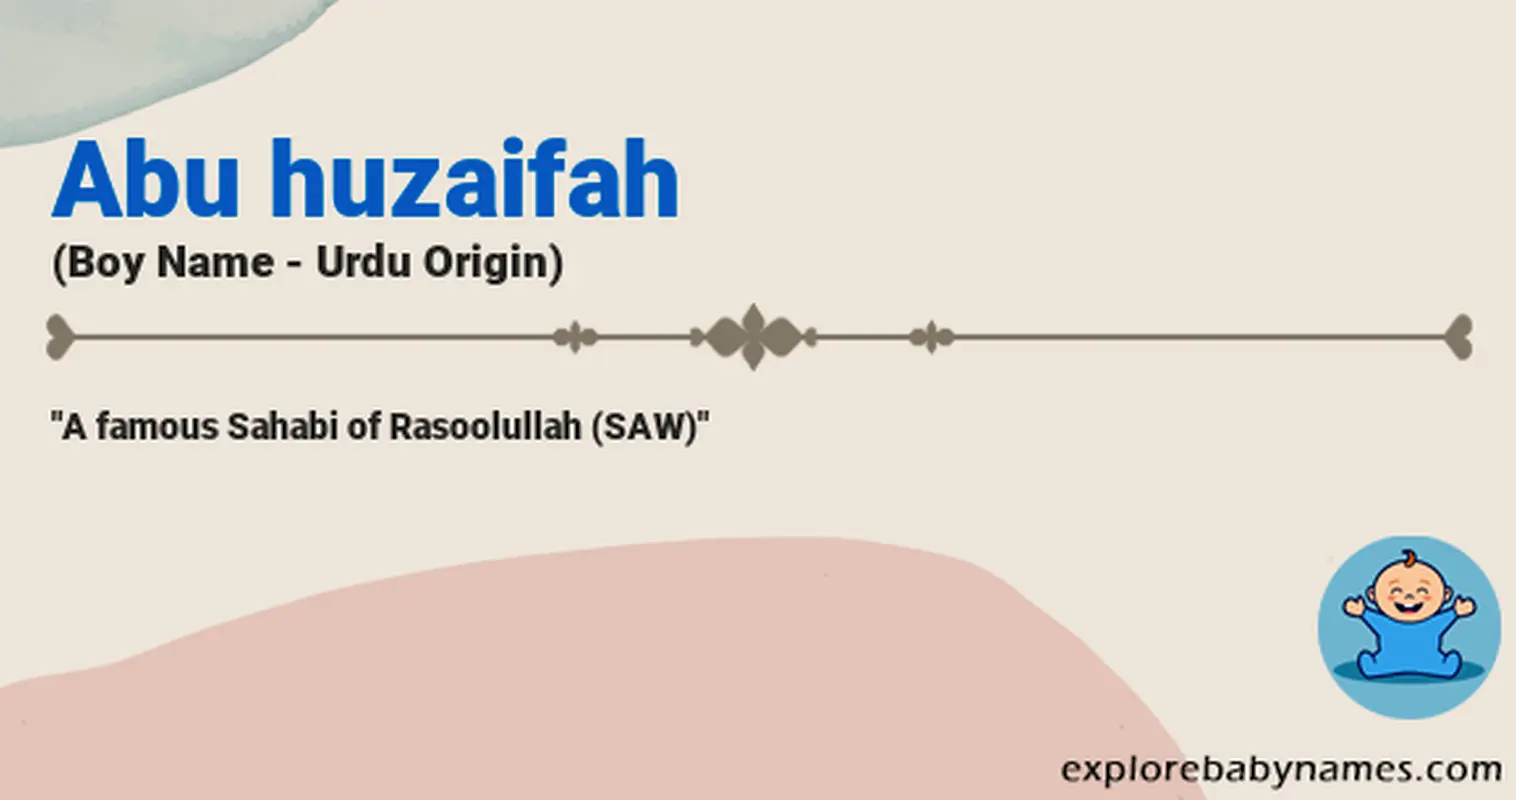 Meaning of Abu huzaifah